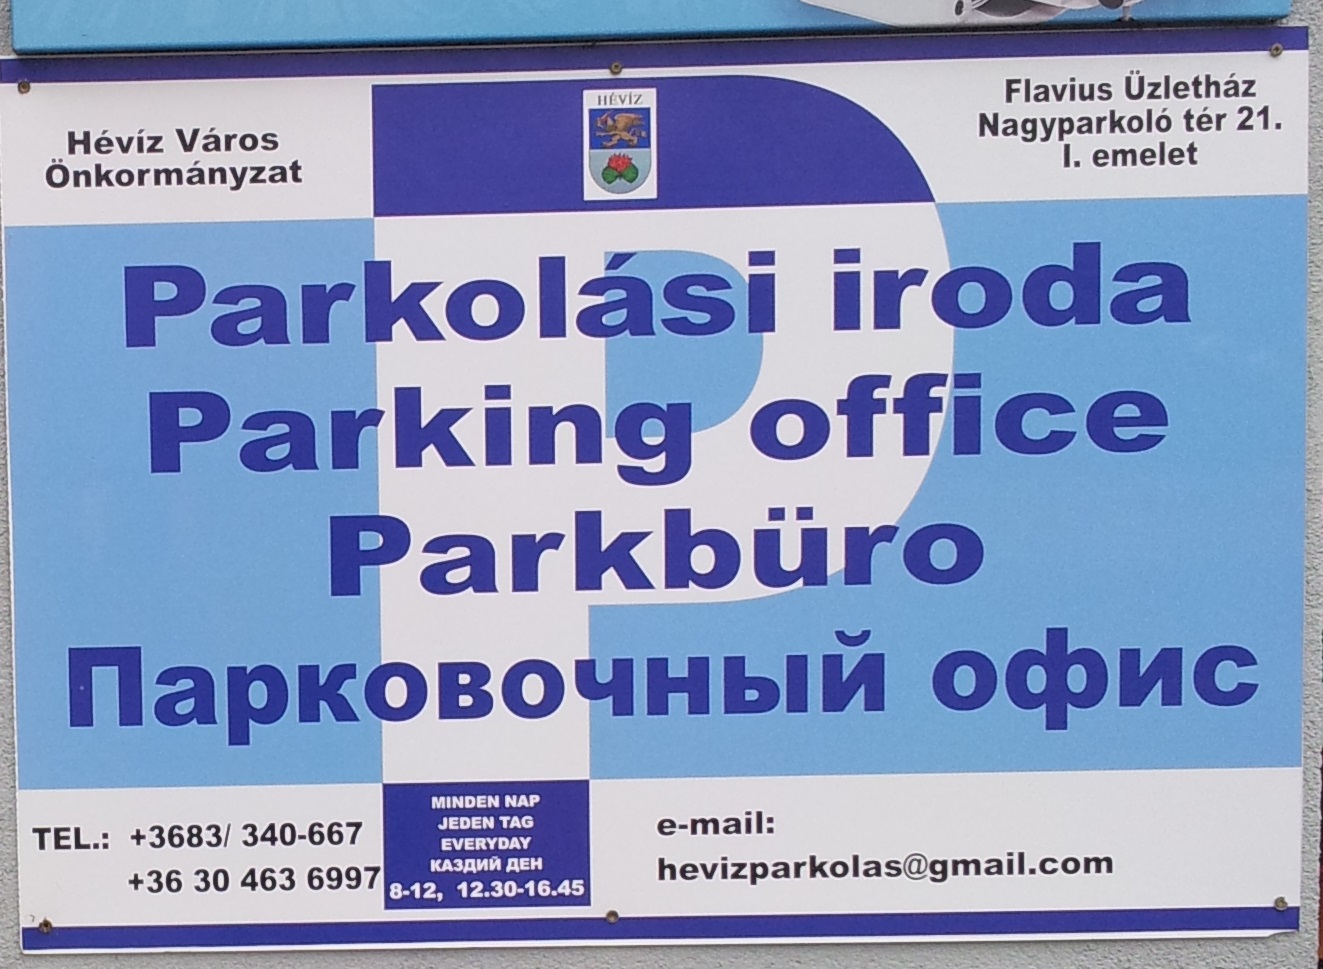 Parking office in Hévíz